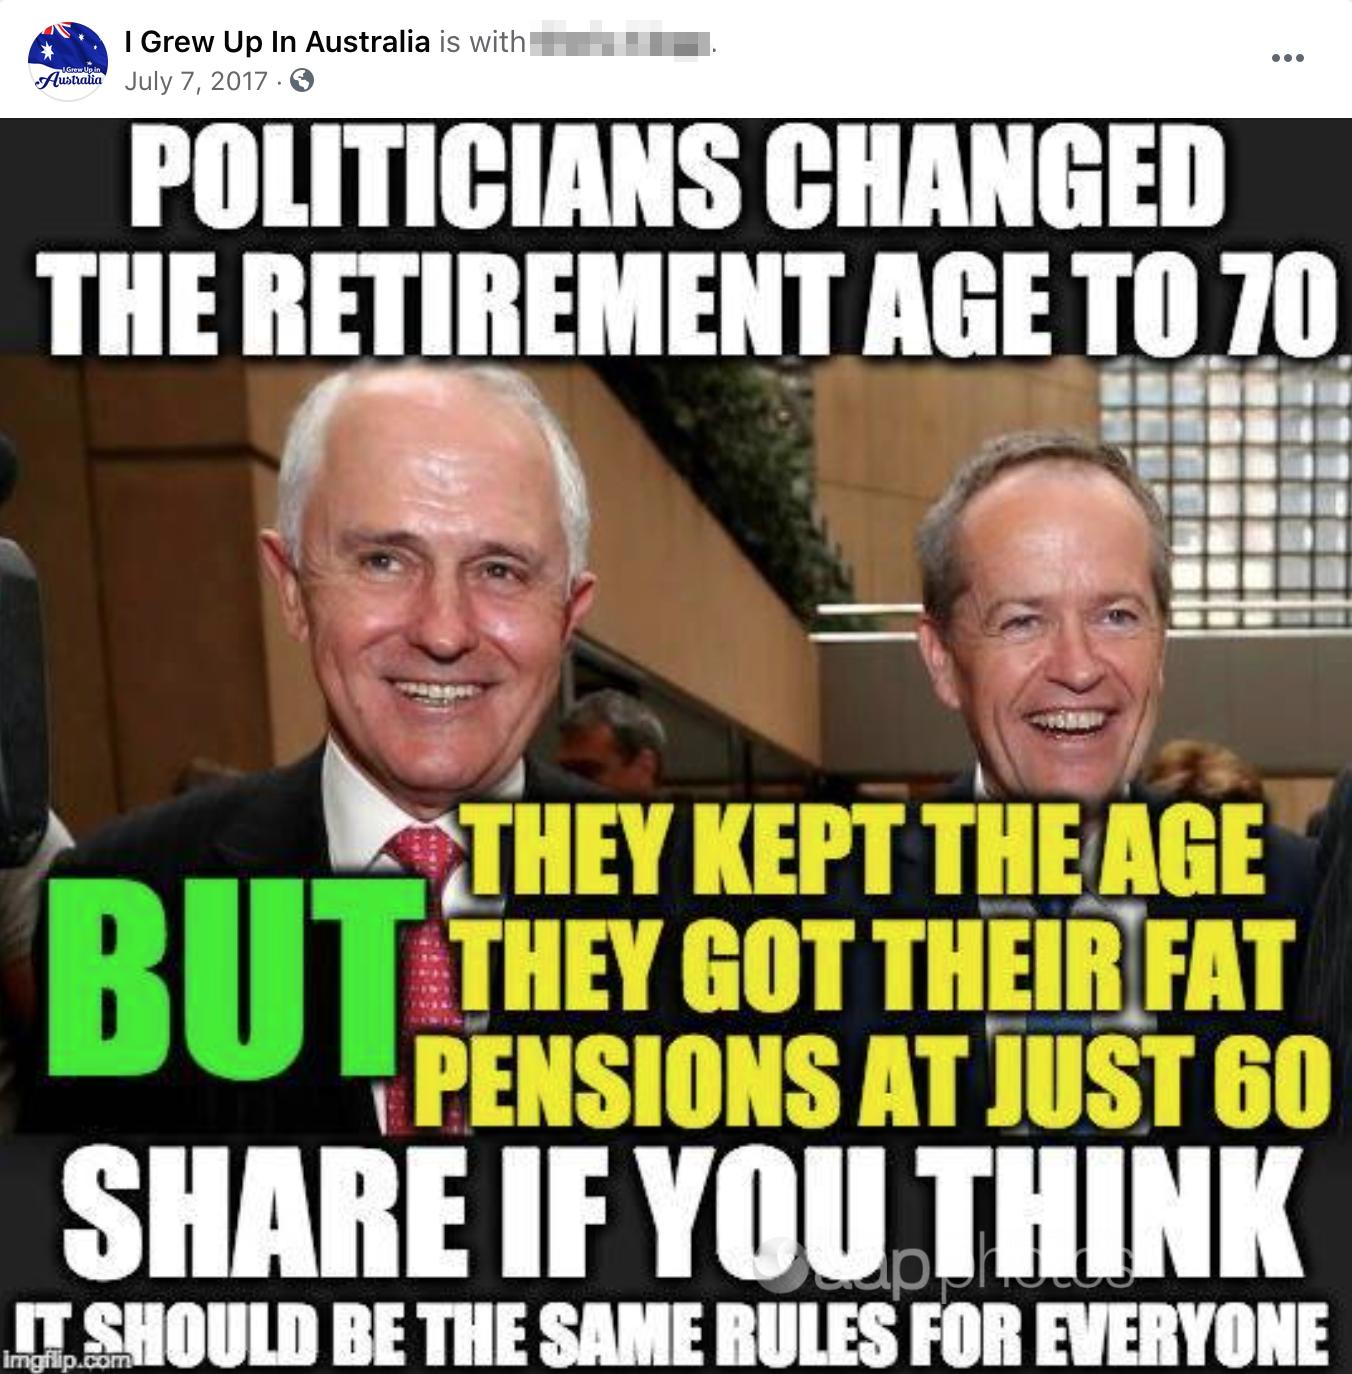 A meme about politicians' pensions